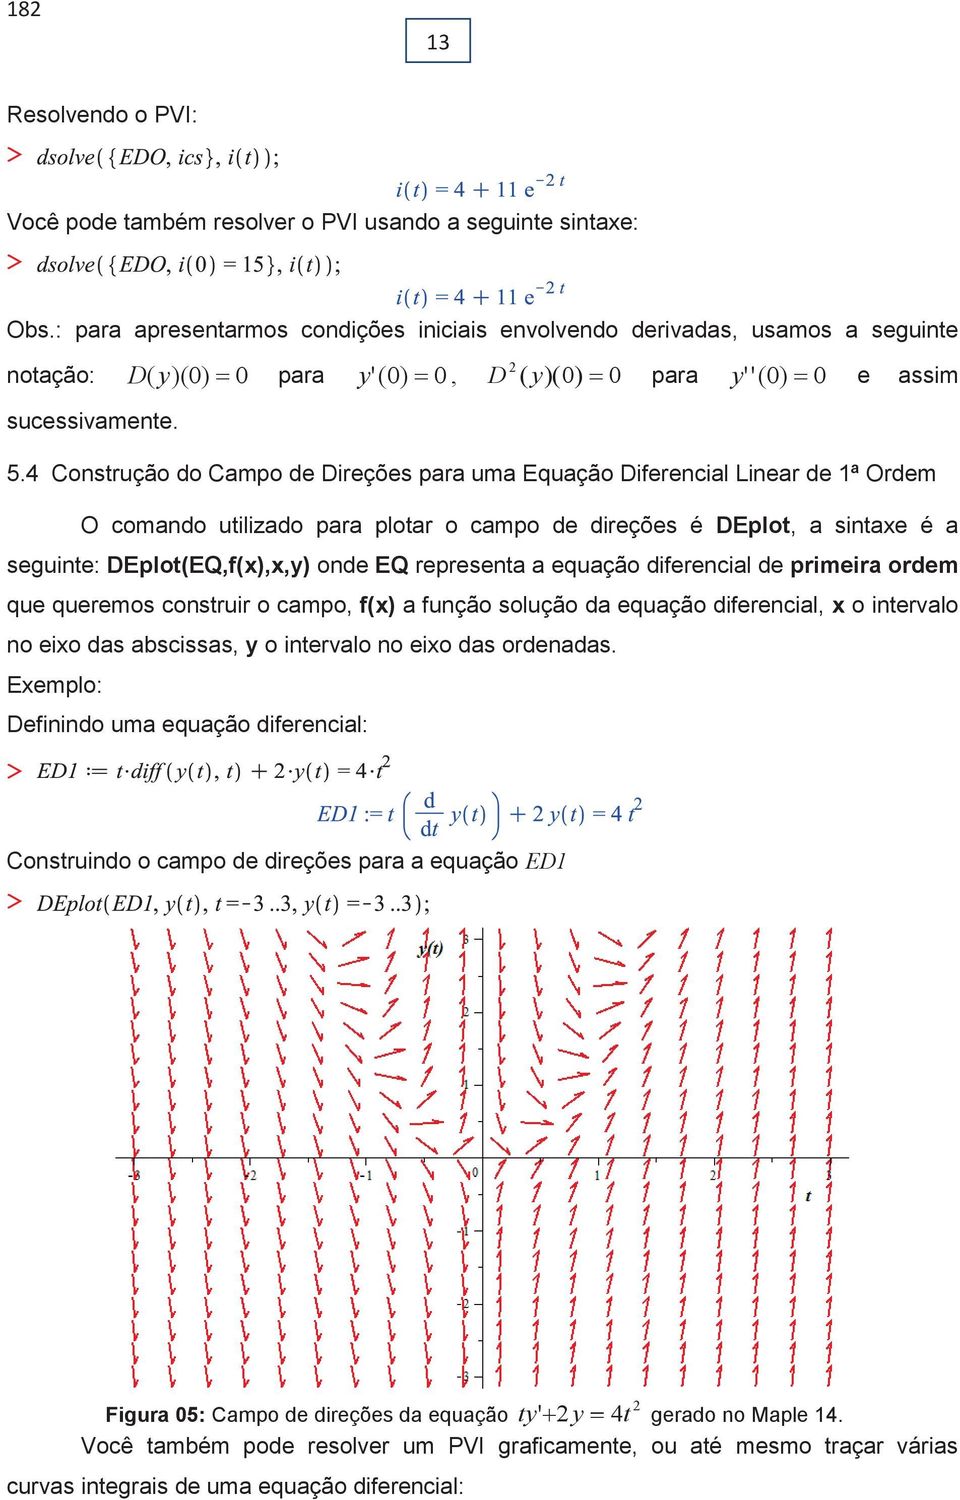 4 Consrução do Campo de Direções para uma Equação Diferencial Linear de 1ª Ordem O comando uilizado para ploar o campo de direções é DEplo, a sinaxe é a seguine: DEplo(EQ,f(x),x,y) onde EQ represena